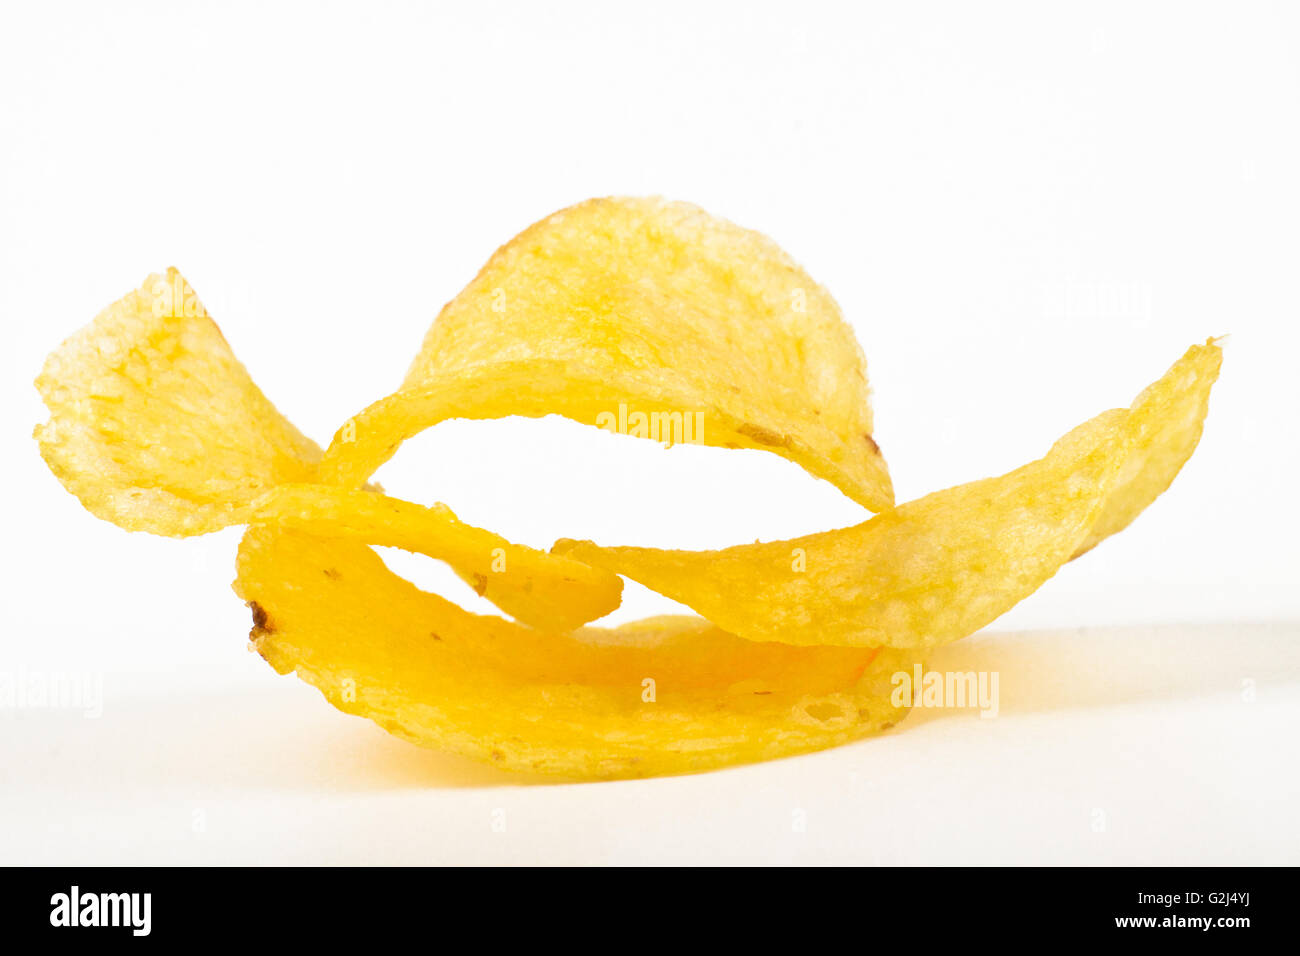 erhltlich Kartoffel-Chips anhäufen isolierten auf weißen Hintergrund Stockfoto